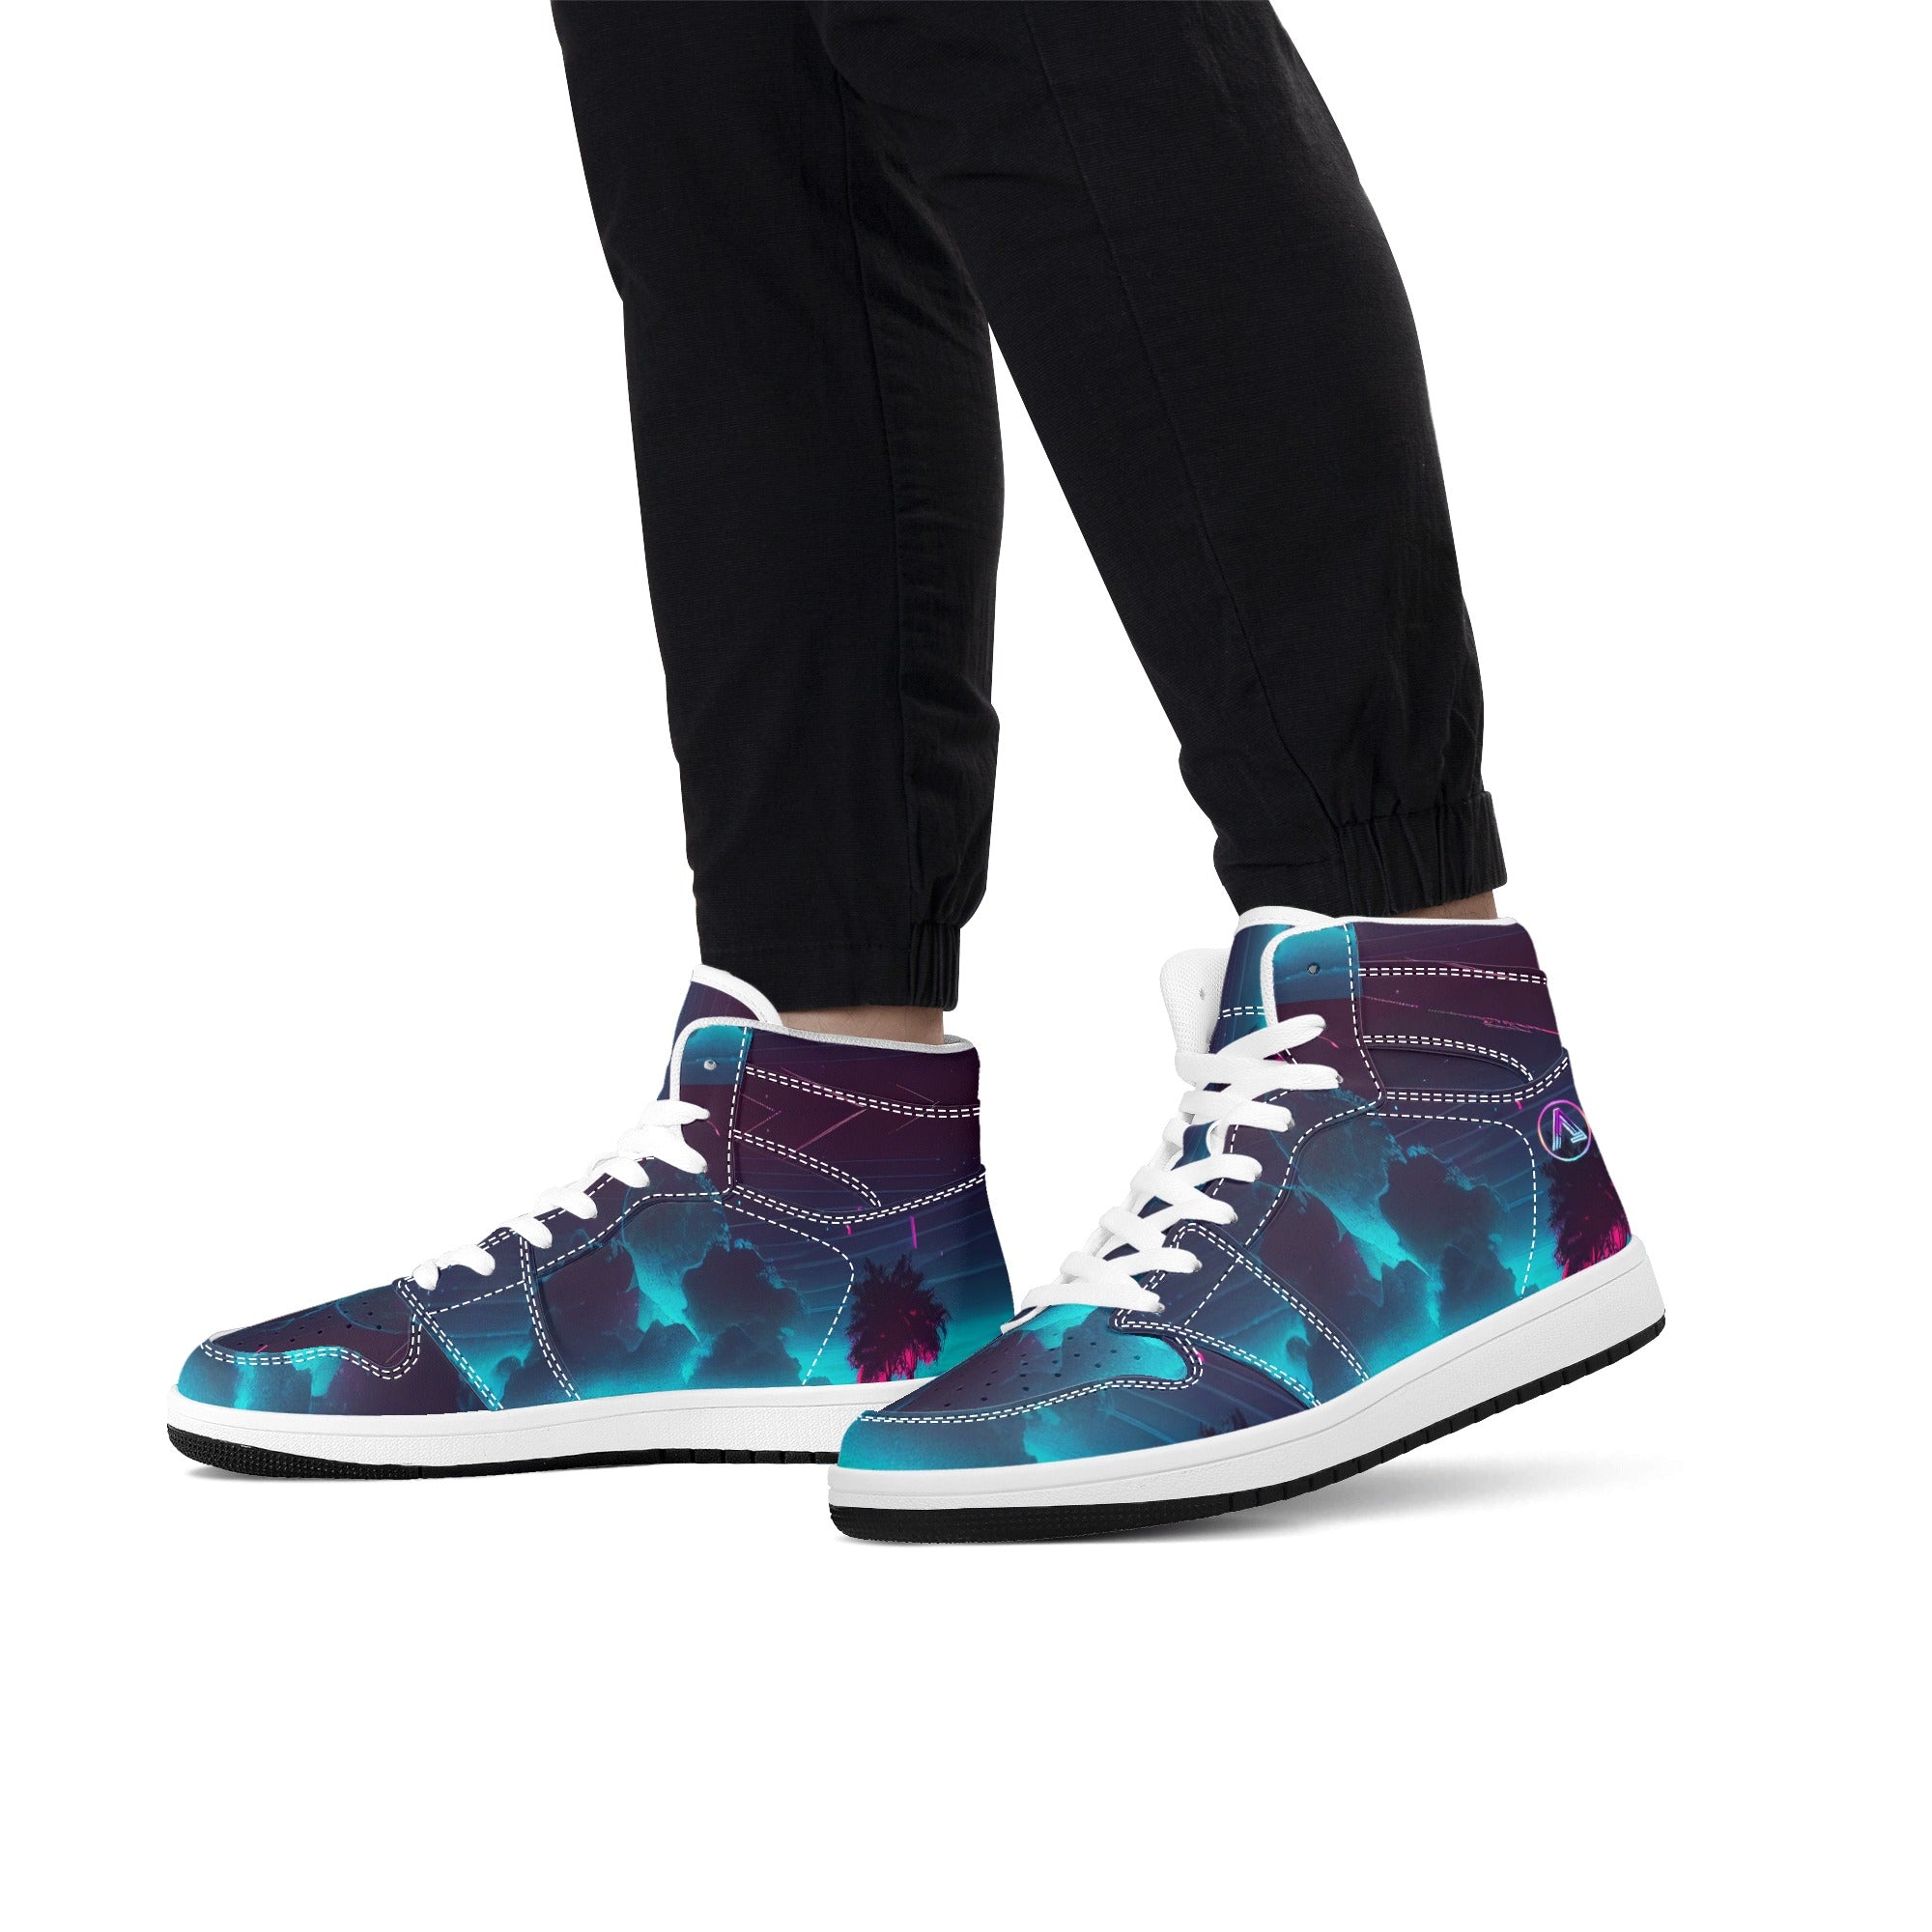 Men's Reminiscent Blue Hi-Top Sneakers